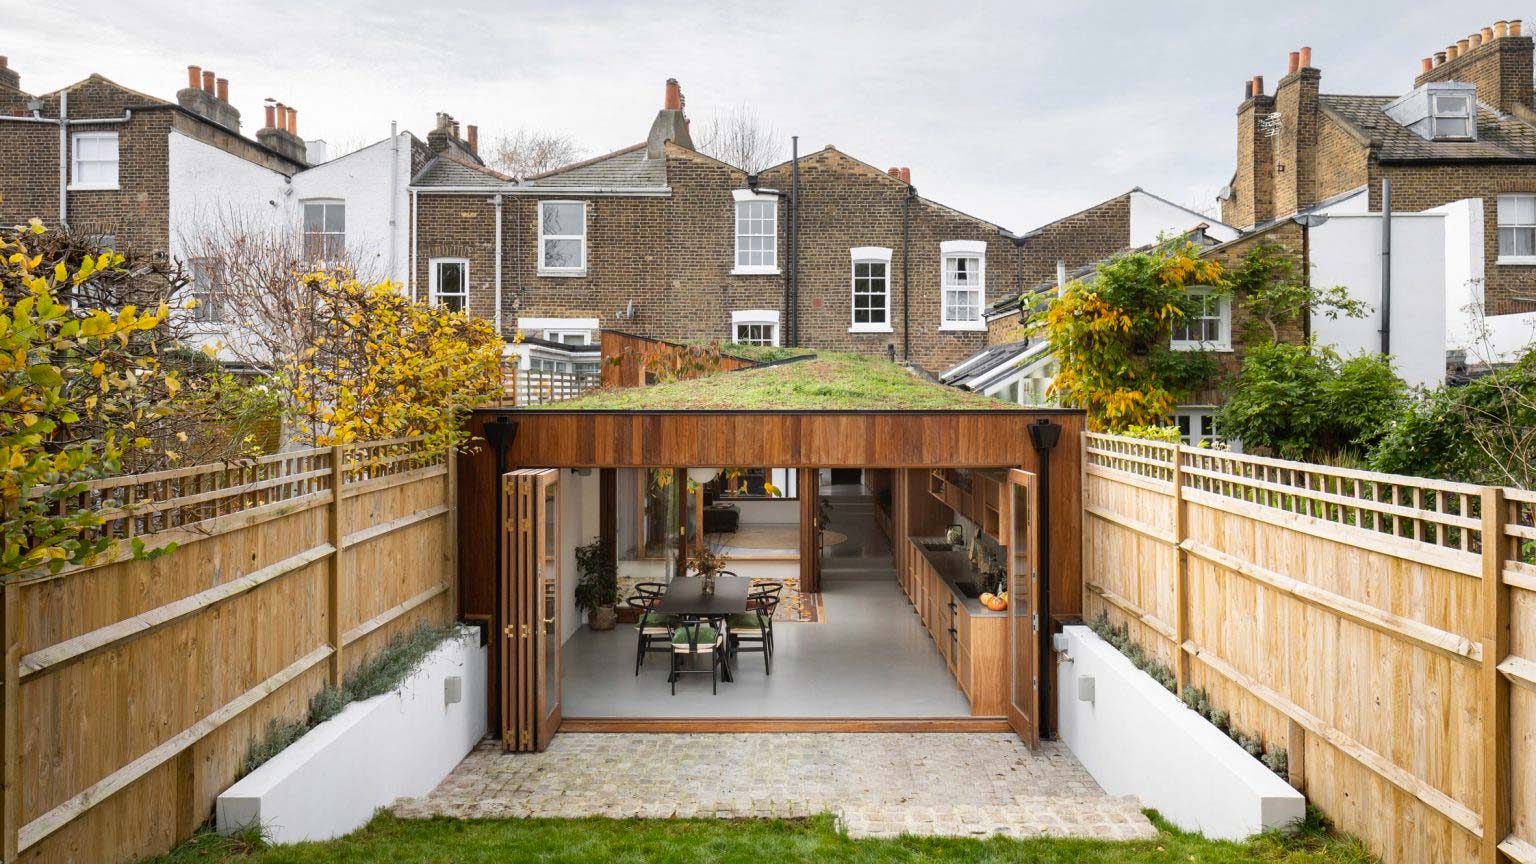 Turner Architects heeft een Georgiaans rijtjeshuis in Zuid-Londen gerenoveerd en uitgebreid, waardoor een opeenvolging van woonruimtes is ontstaan, afgewisseld met binnenplaatsen die de veranderende kleuren van de seizoenen naar binnen brengen. 